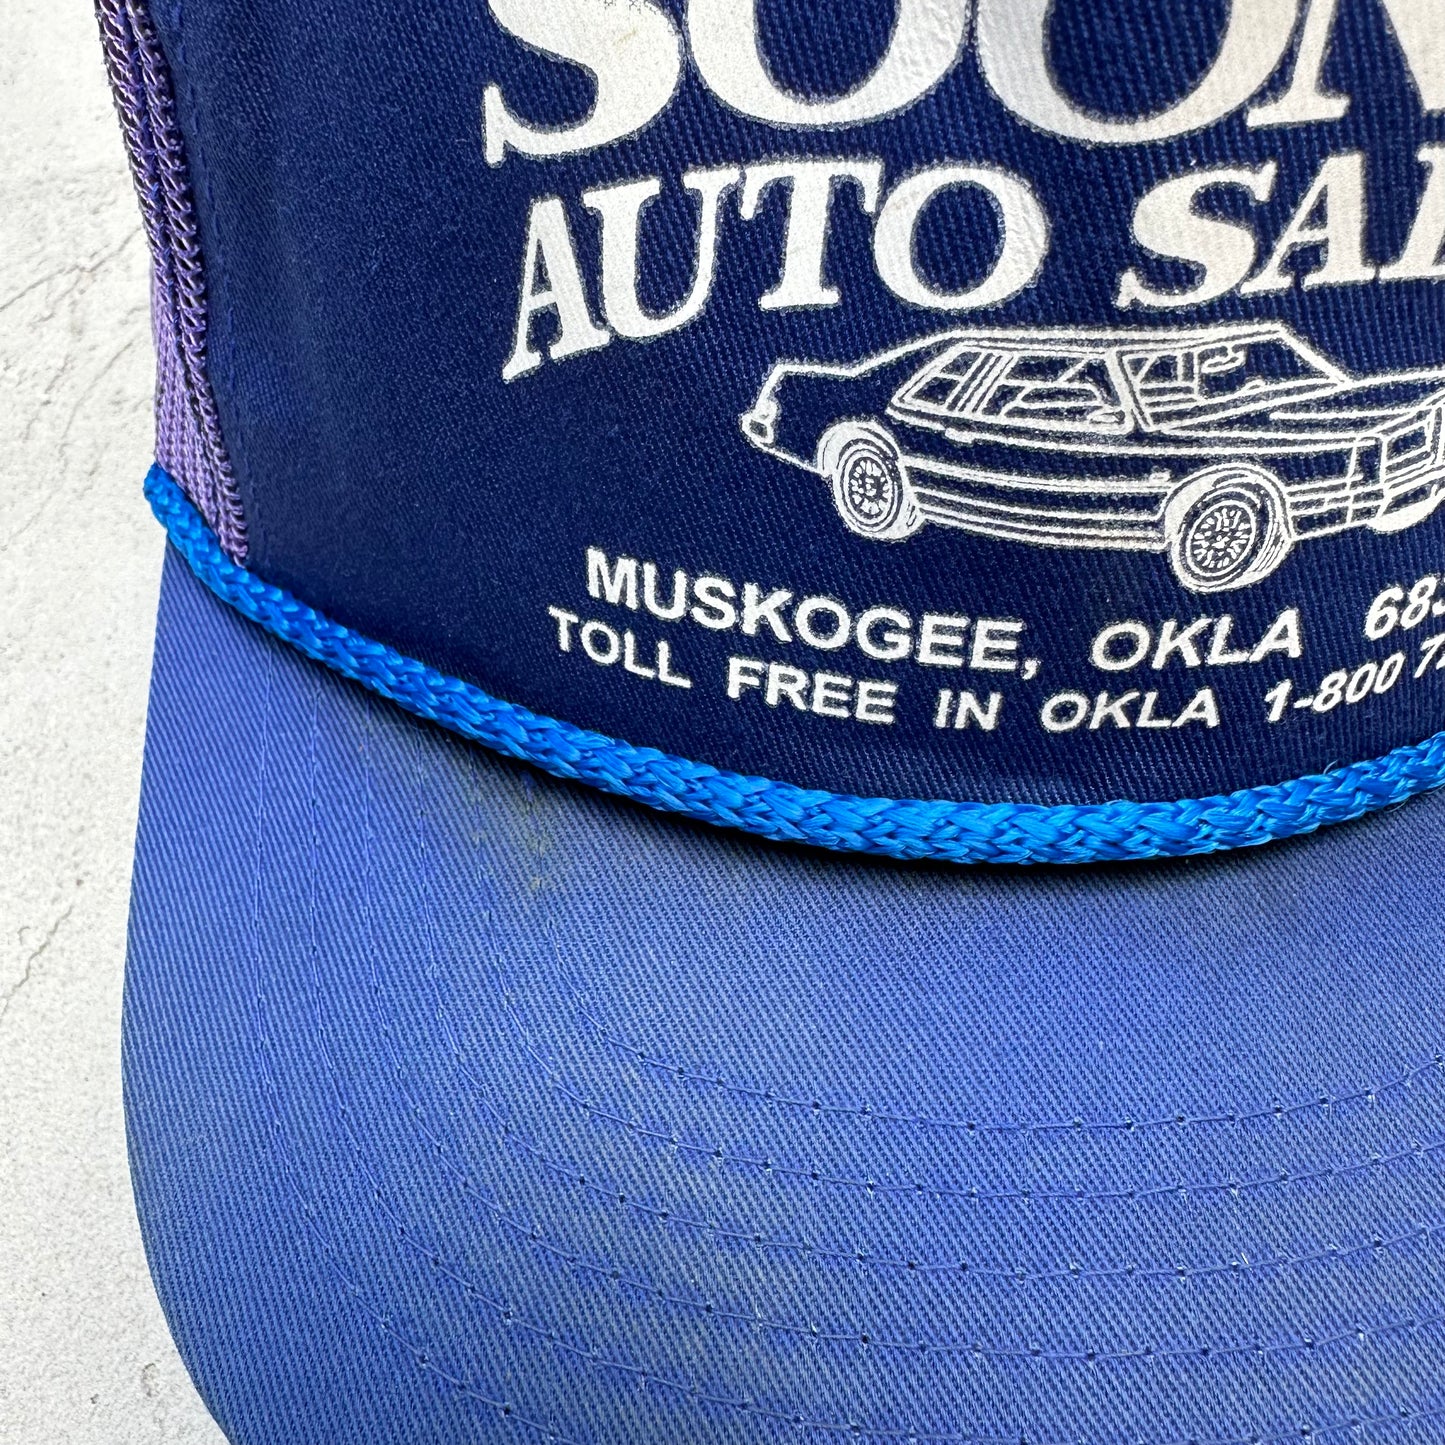 Vintage Sooner Auto Salvage Oklahoma Mesh Hat